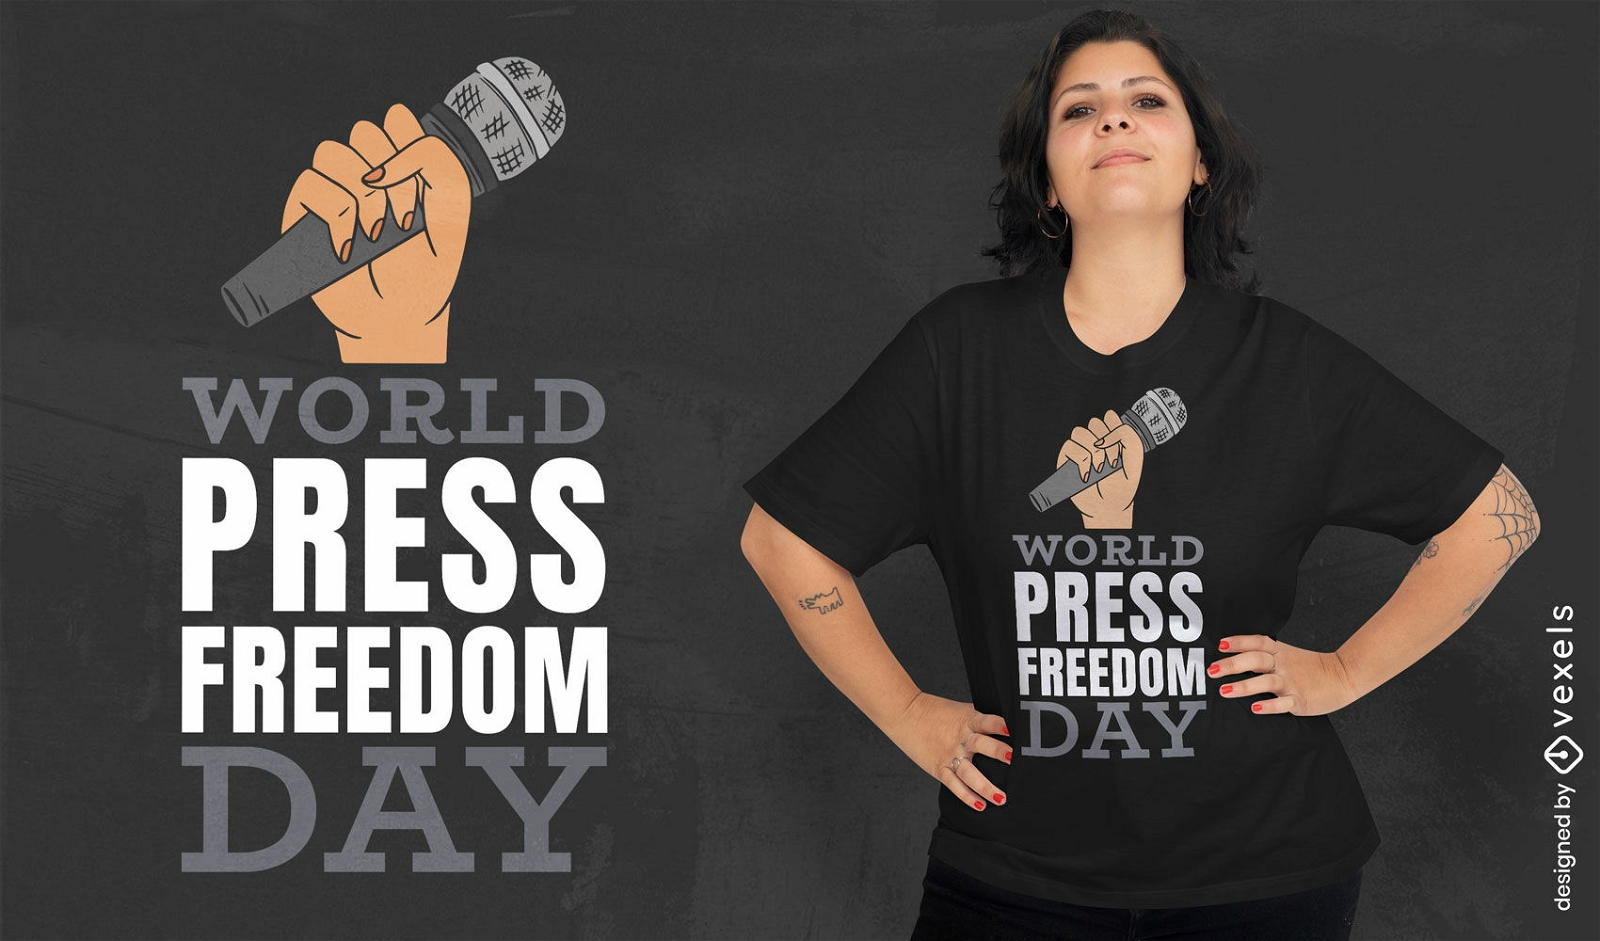 Dise?o de camiseta del d?a mundial de la libertad de prensa.